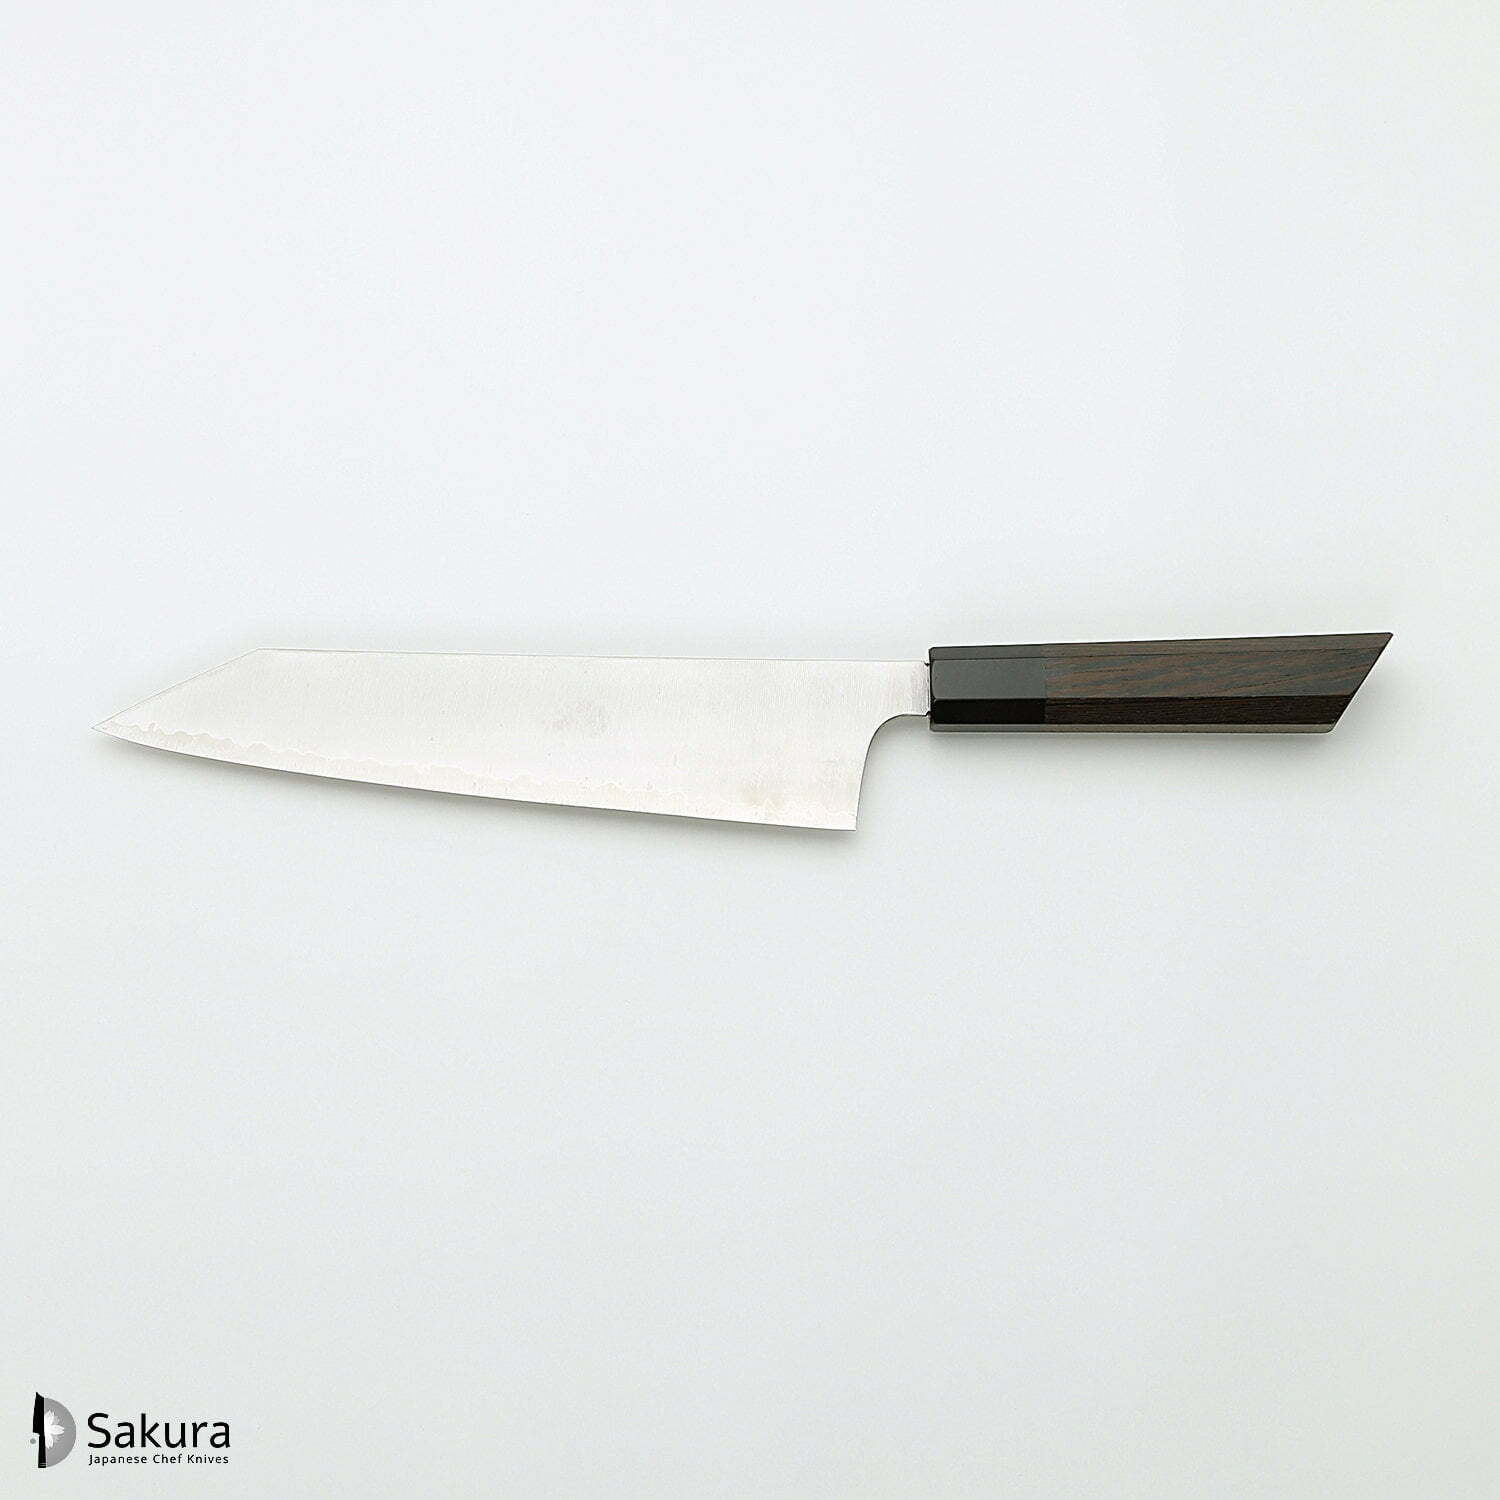 סכין שף רב-תכליתית קִּירִיצוּקֶה גִּיוּטוֹ 240מ״מ מחושלת בעבודת יד 3 שכבות: פלדת פחמן יפנית מתקדמת מסוג HAP40 עטופה פלדת אל-חלד גימור מט מלוטש האטסו קוקורו יפן